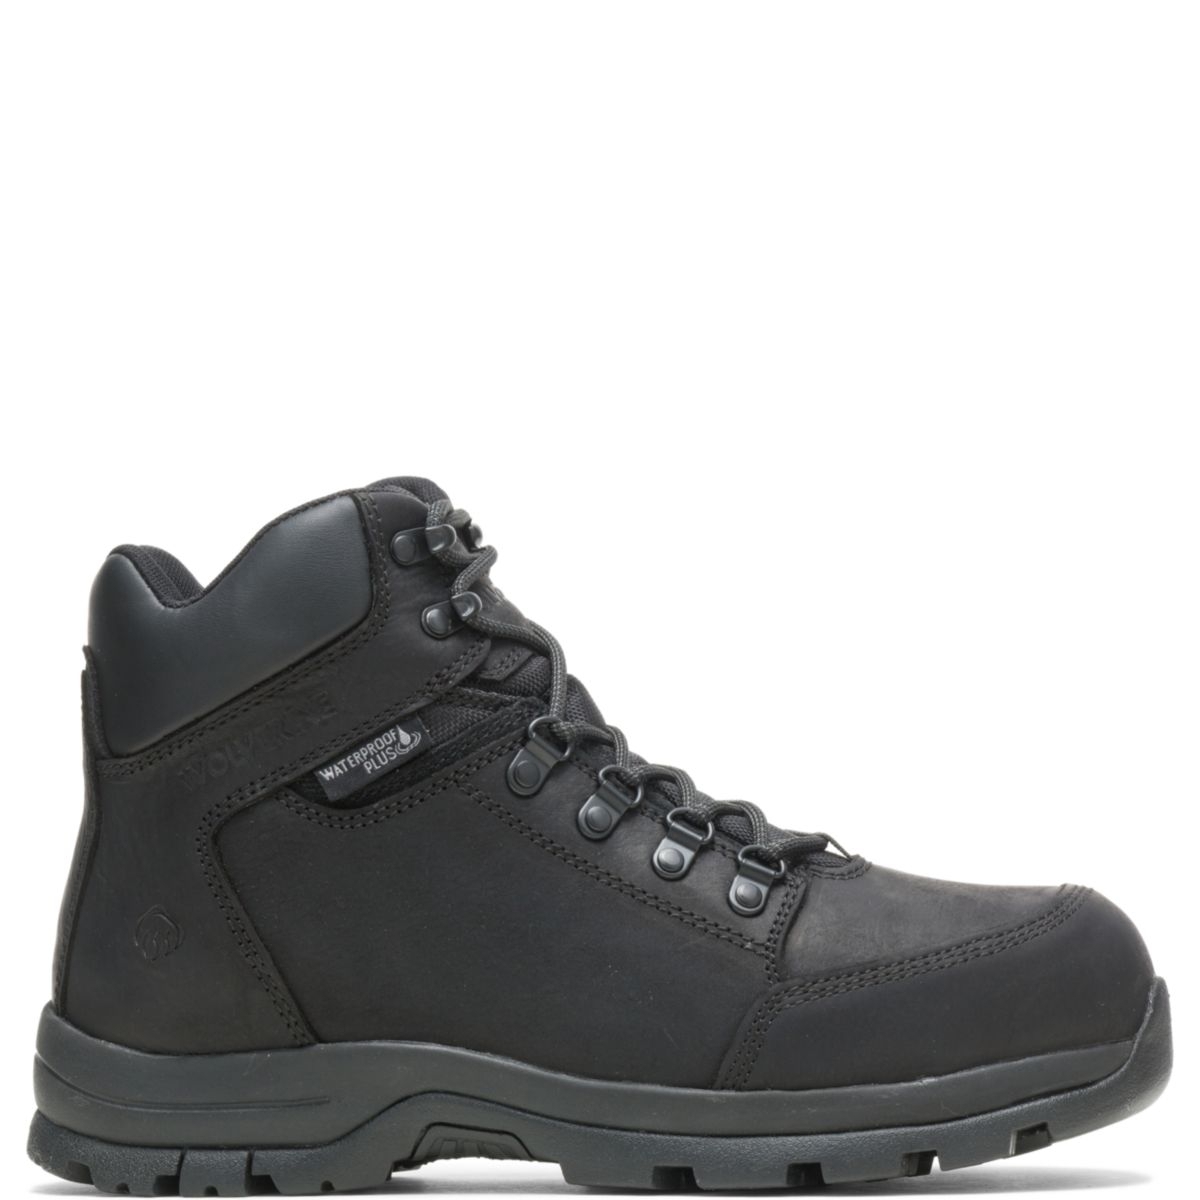 WOLVERINE Men's Grayson Steel Toe Waterproof Work Boot Black - W211042 BLACK - BLACK, 14